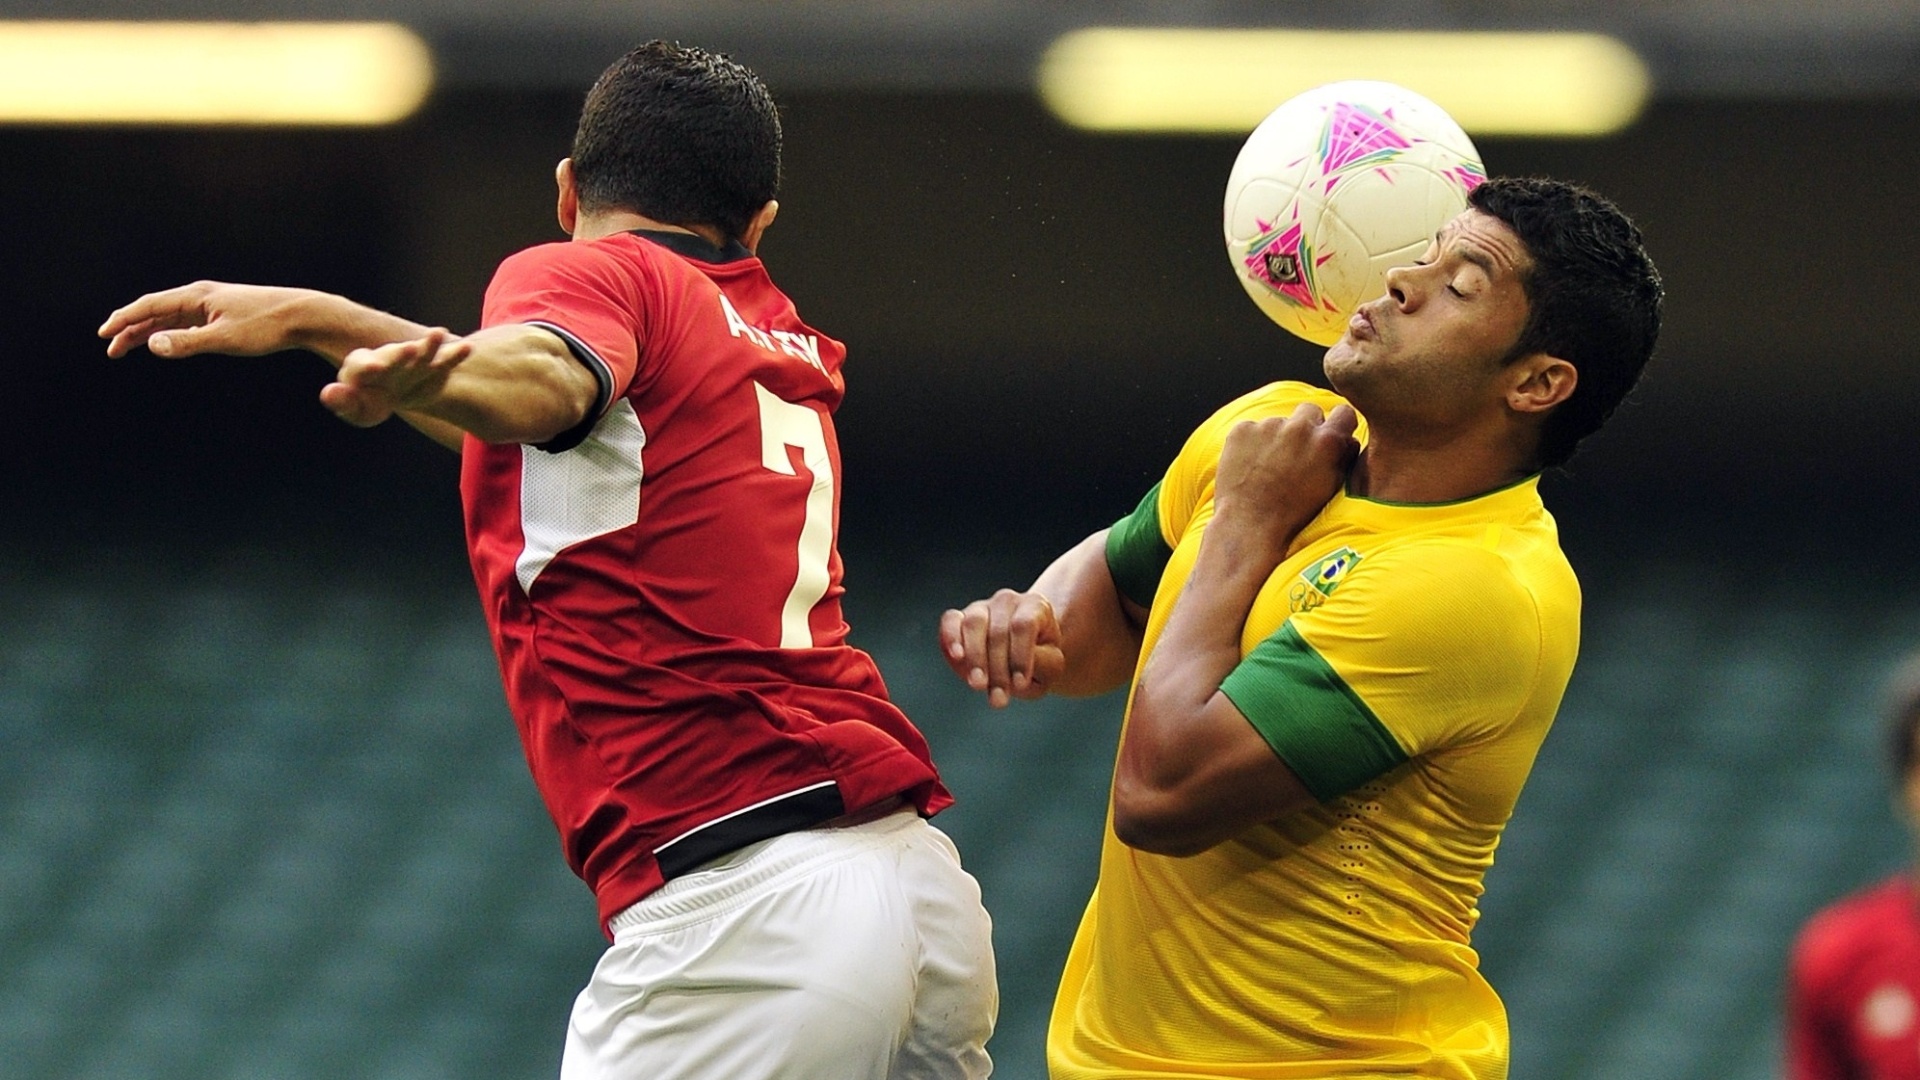 Atacante brasileiro Hulk (d) disputa a bola com o defensor do Egito Fathi na estreia dos Jogos